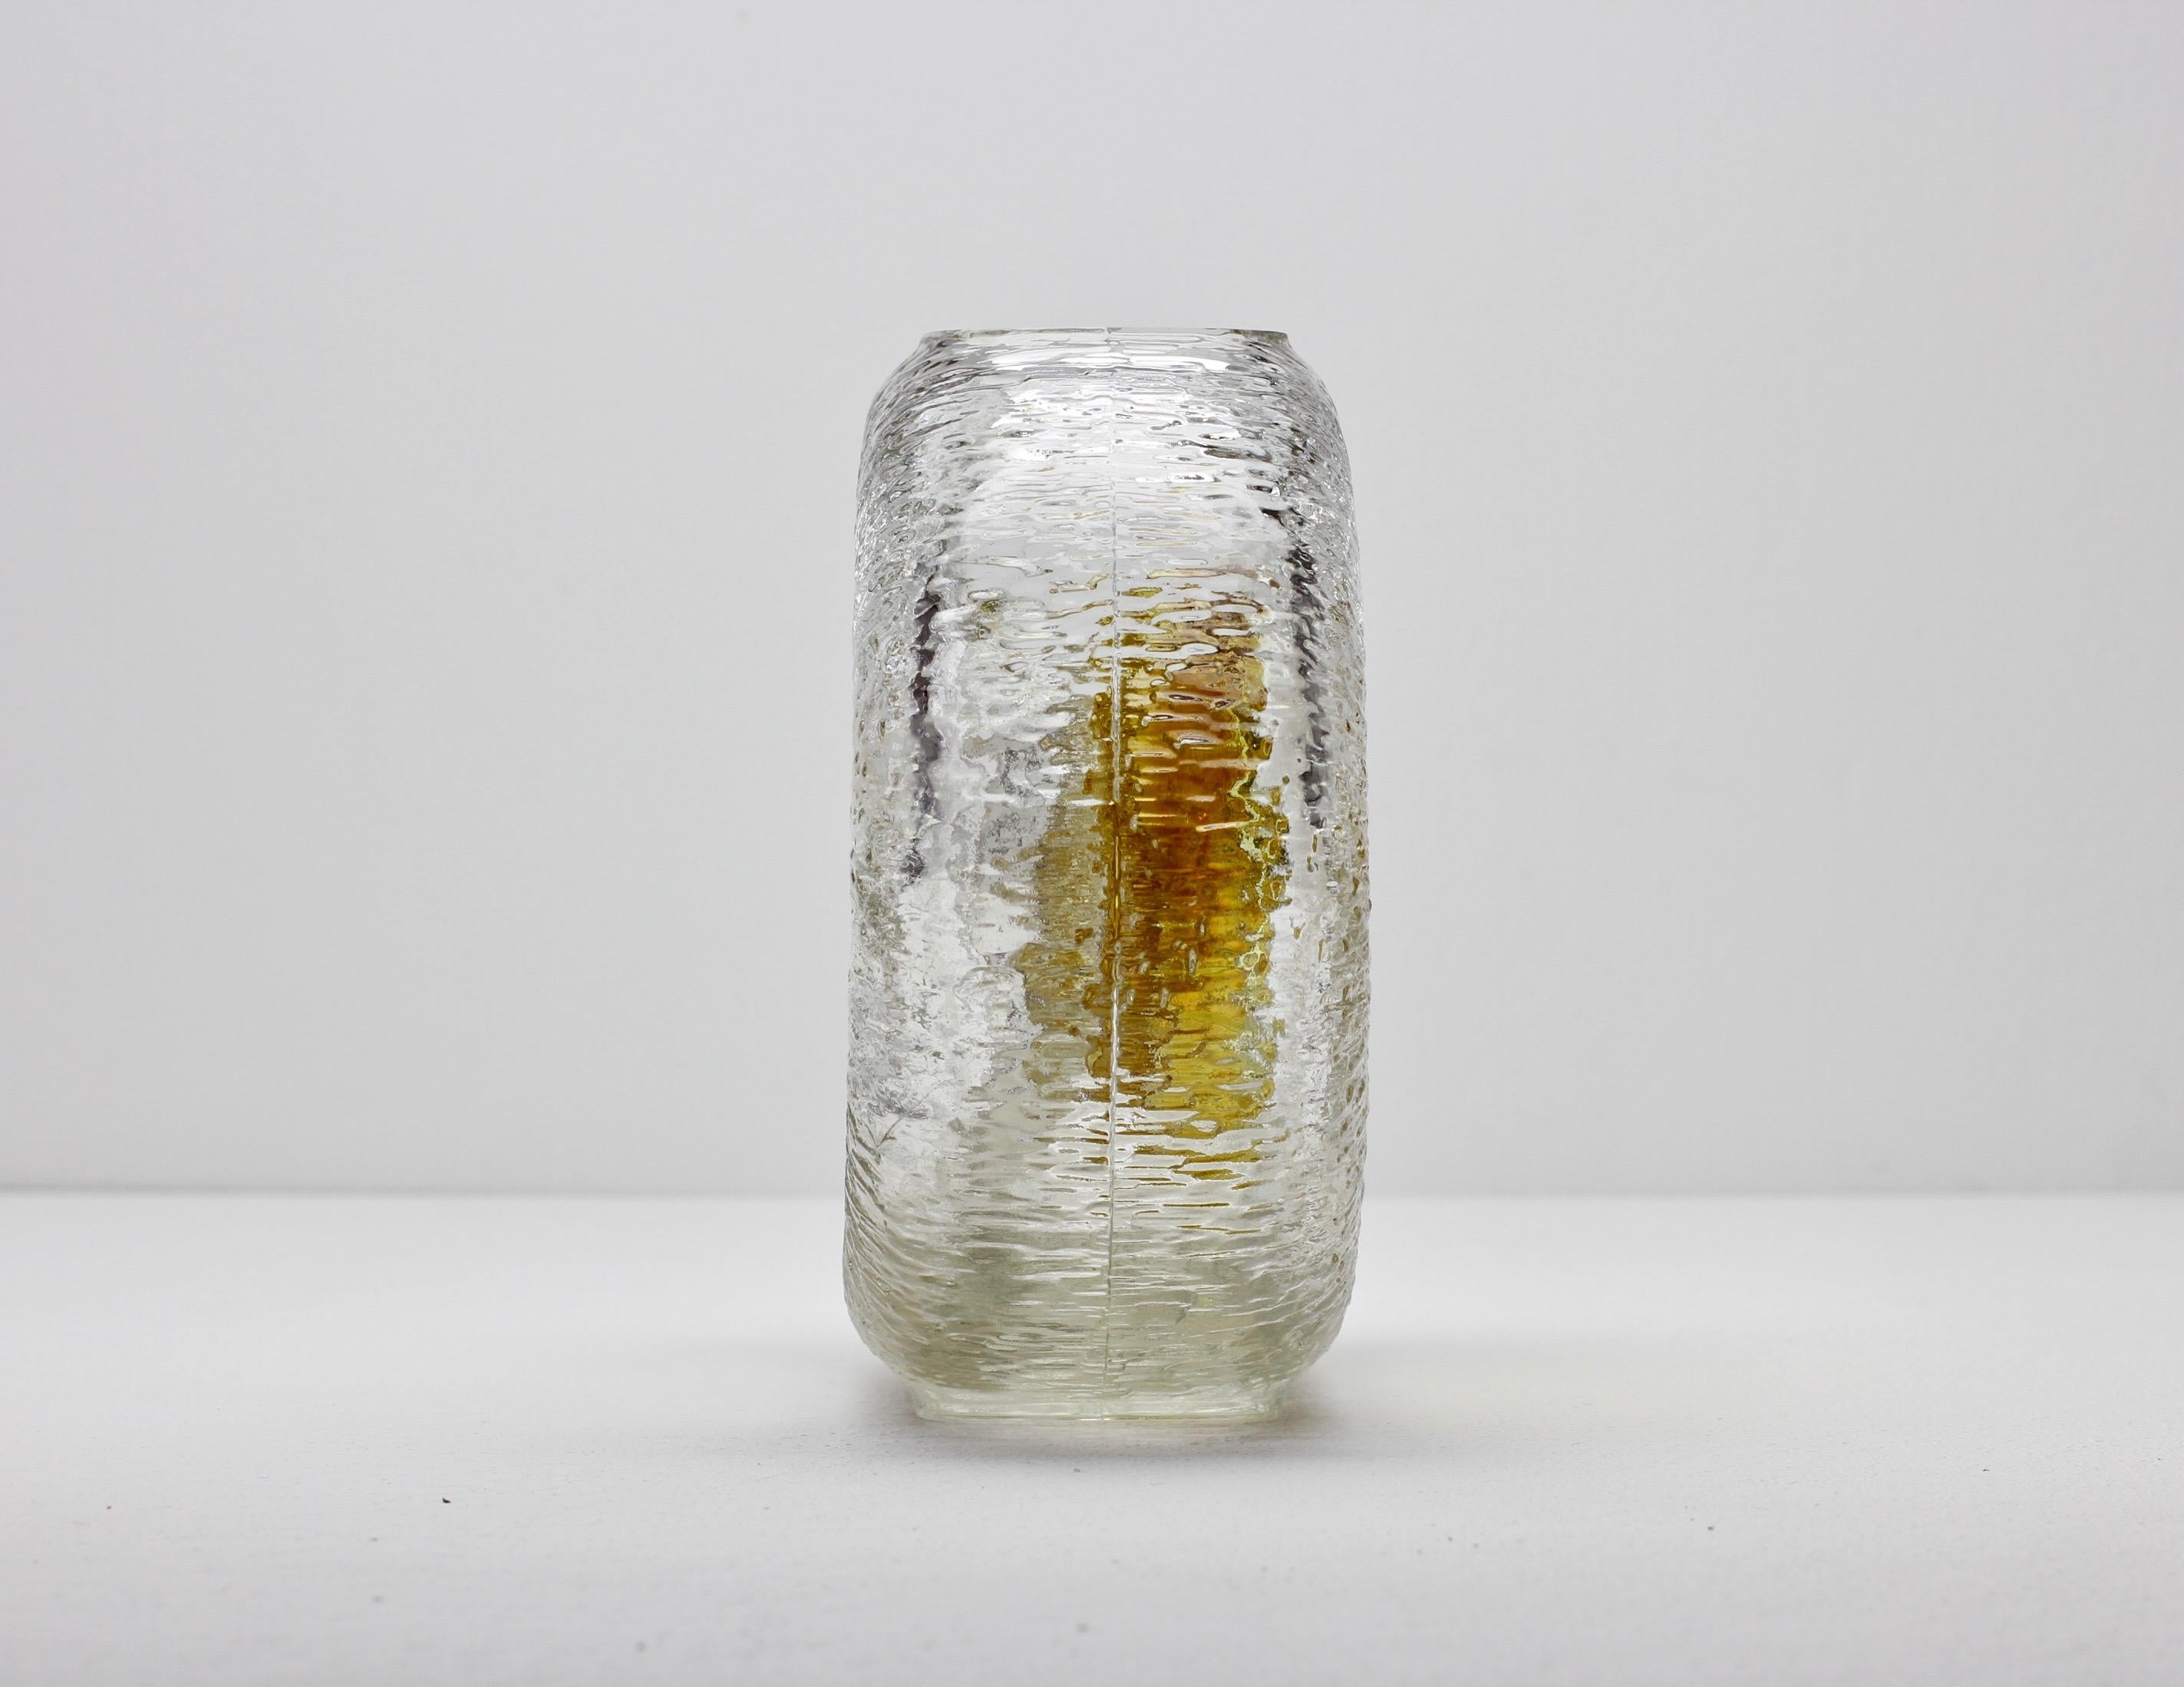 Vintage midcentury round textured moulded glass vase by Walther Glas of Germany. Une forme et un design très rares. Ce luminaire serait parfait dans une cuisine avec la lampe suspendue 